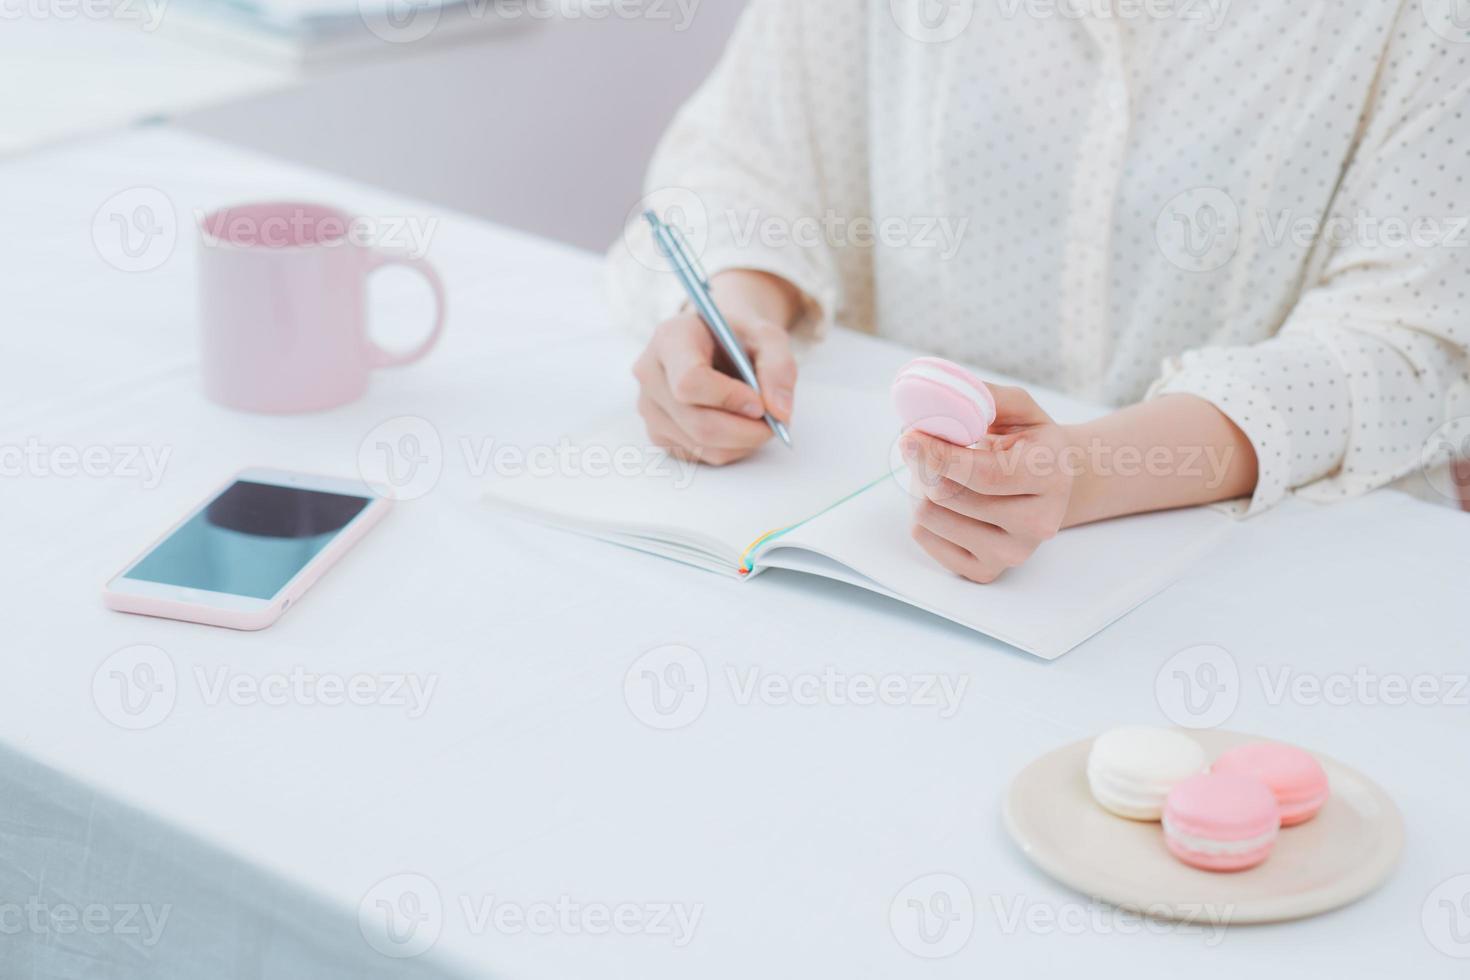 primer plano de mujer o estudiante escribiendo en cuaderno con lápiz, taza, macarons, teléfono foto